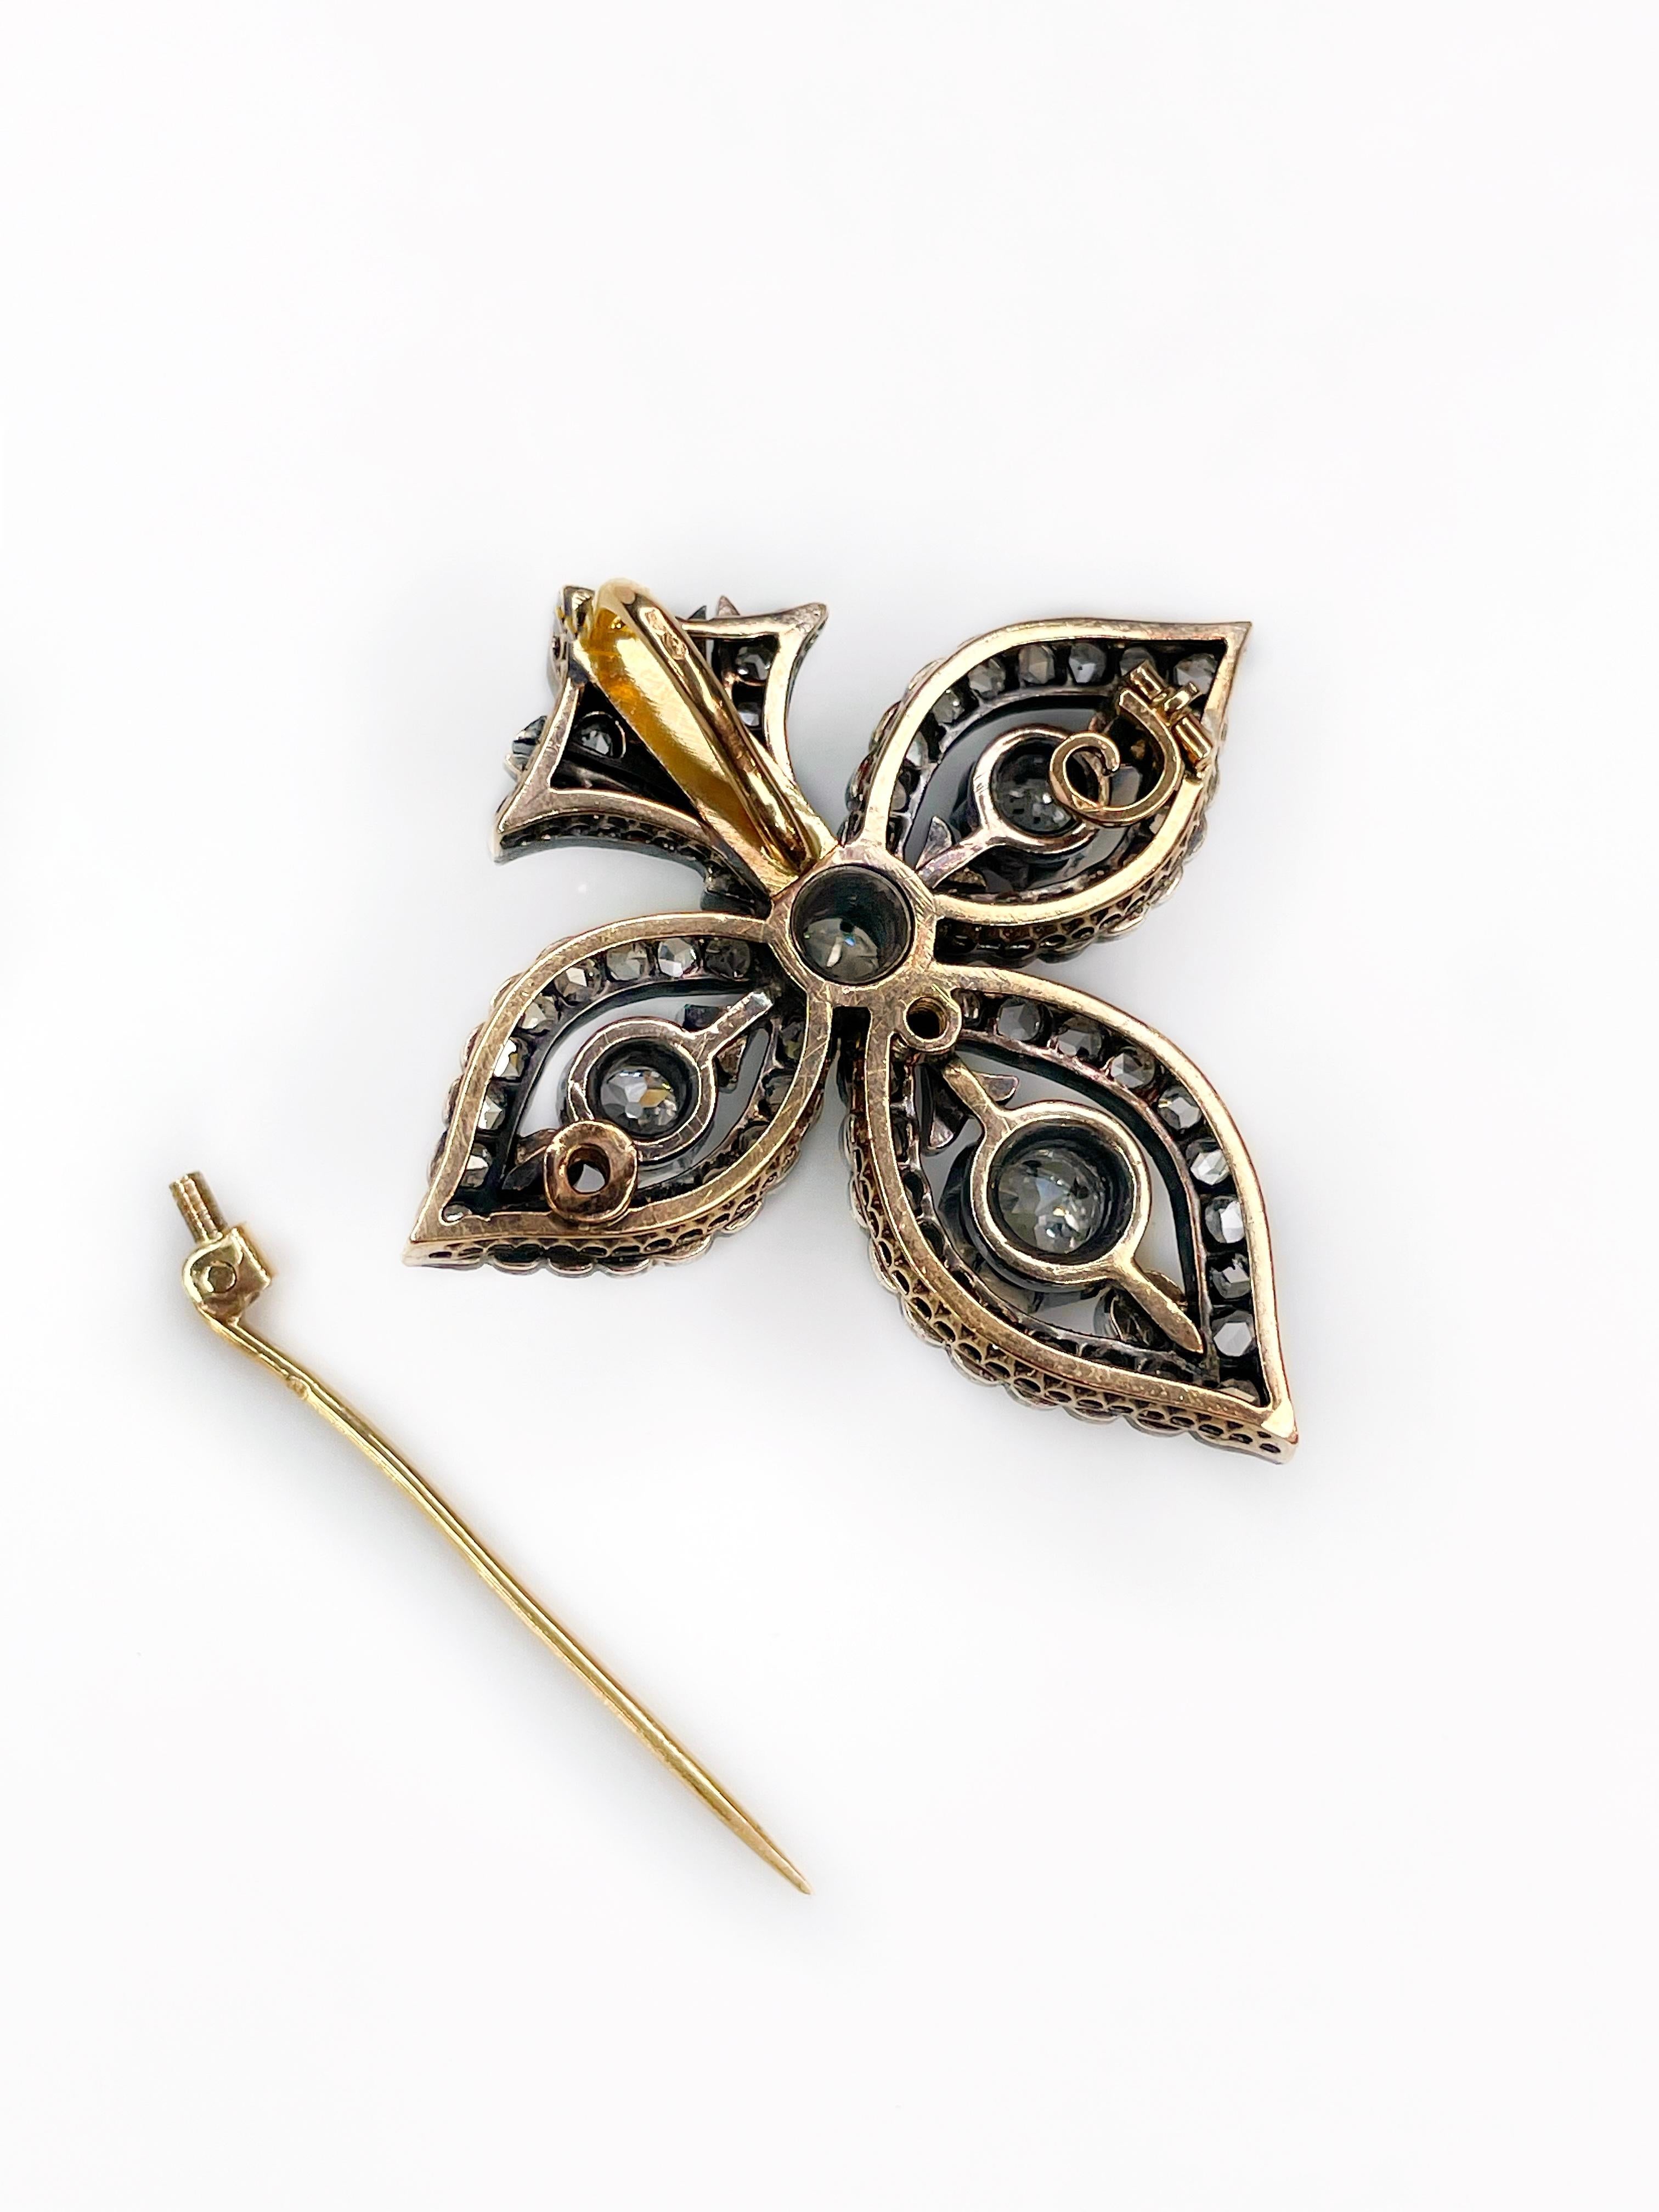 Antique 14K Gold “Fleur-de-lis” Diamond Brooch Pendant XIX Century 5